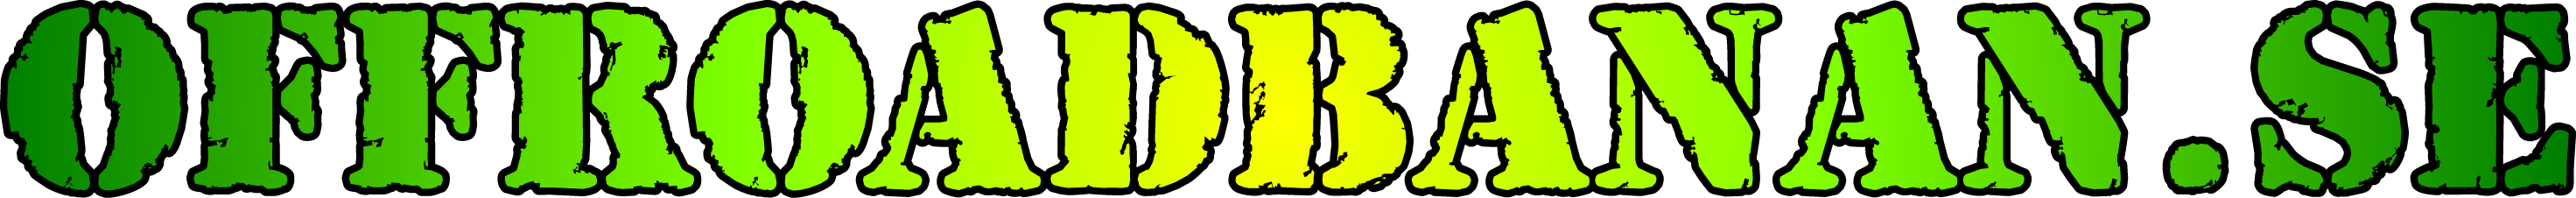 Offroadbanan logotyp